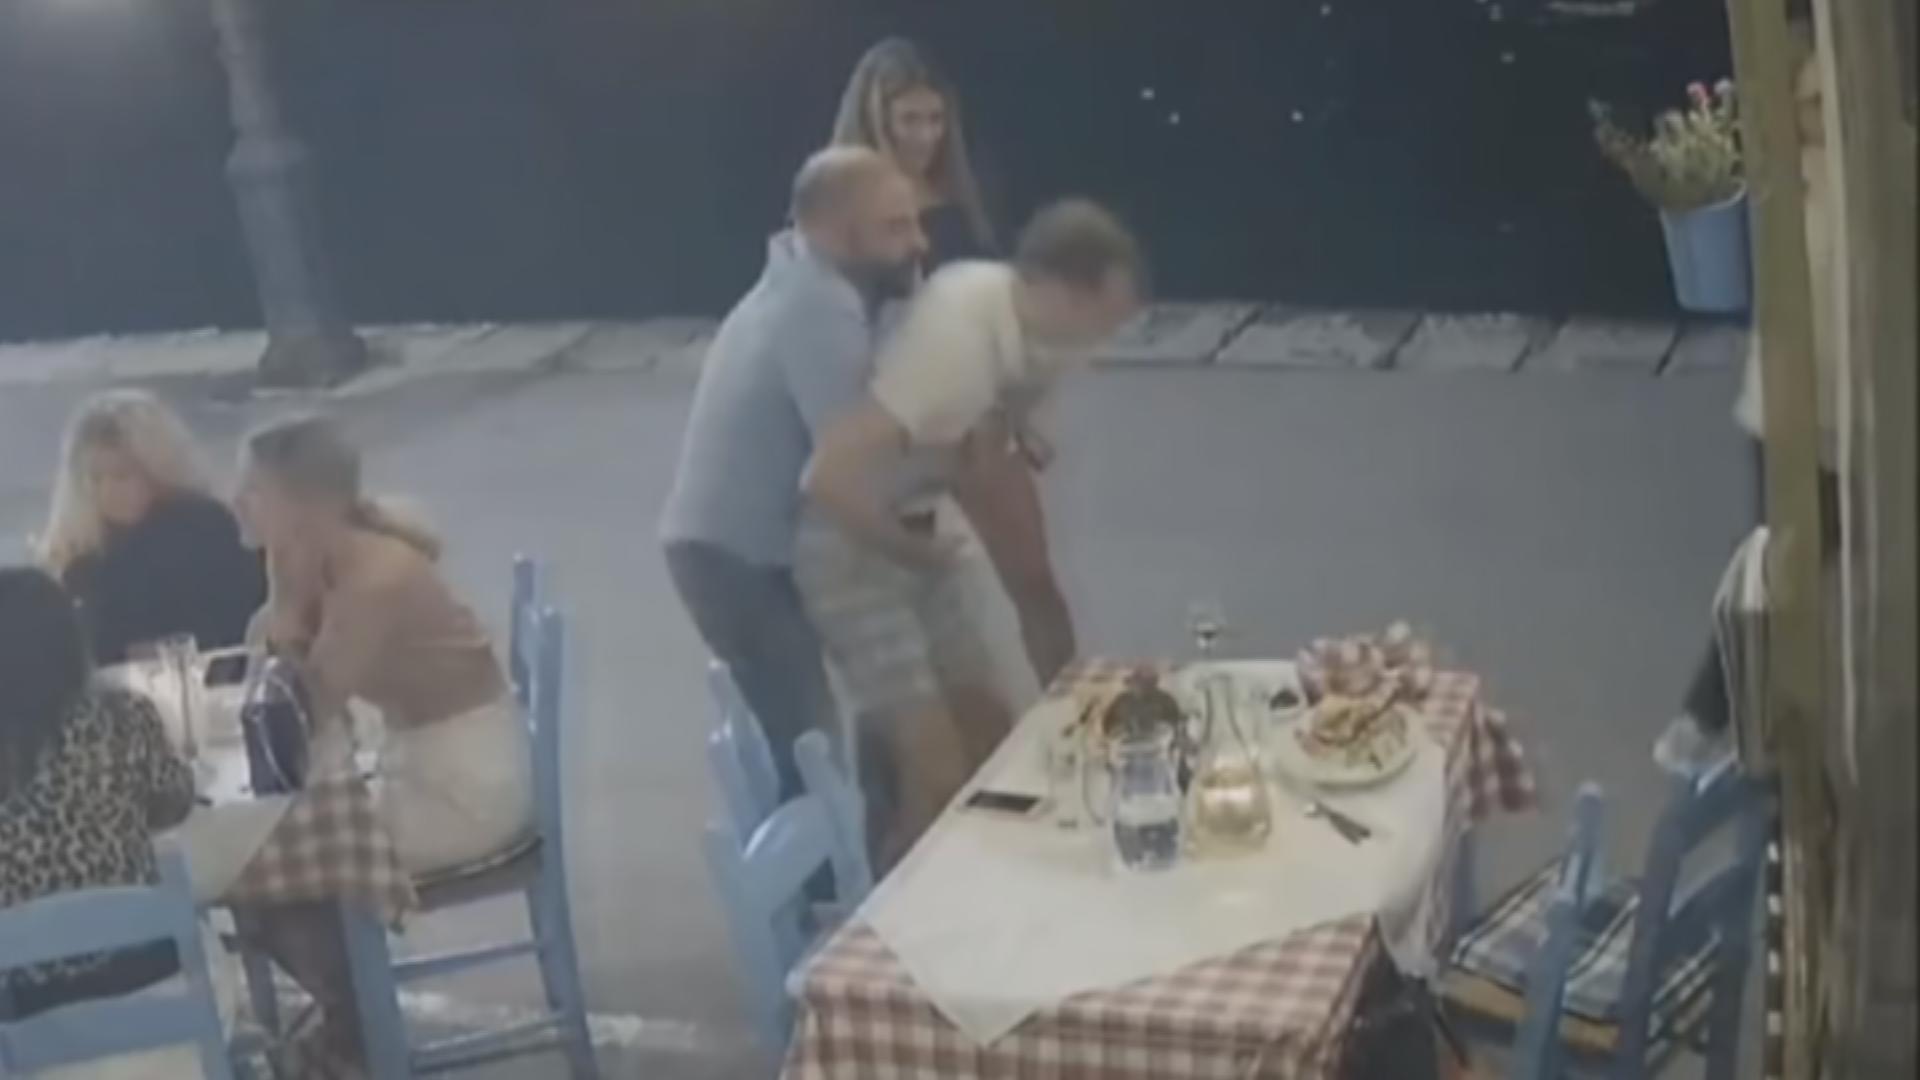 (VIDEO) Joven casi se ahoga en un restaurante: Un empleado lo salvó